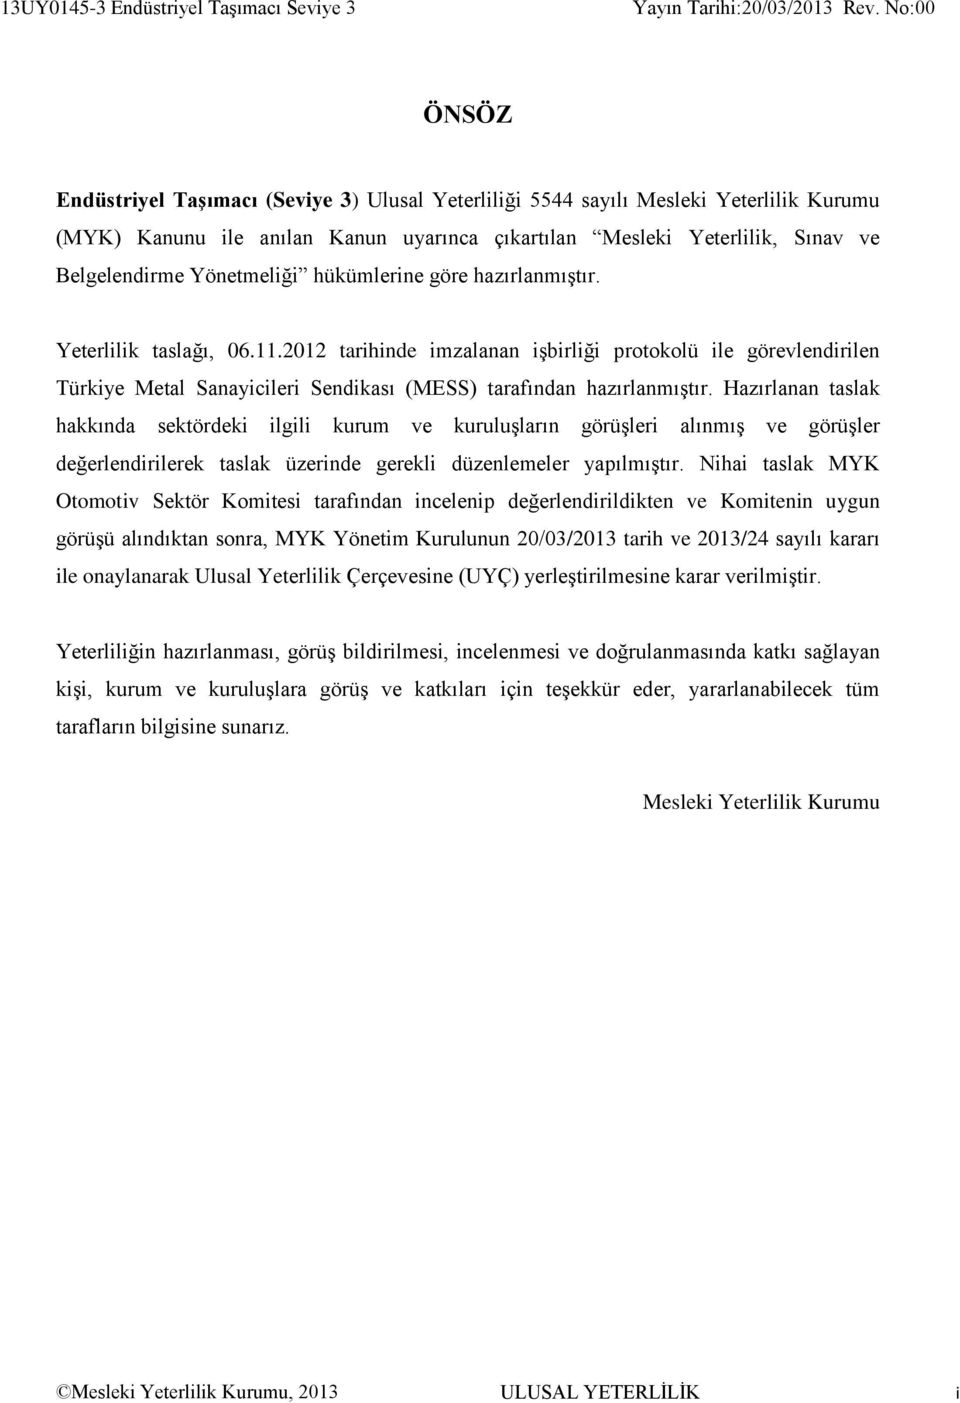 2012 tarihinde imzalanan işbirliği protokolü ile görevlendirilen Türkiye Metal Sanayicileri Sendikası (MESS) tarafından hazırlanmıştır.